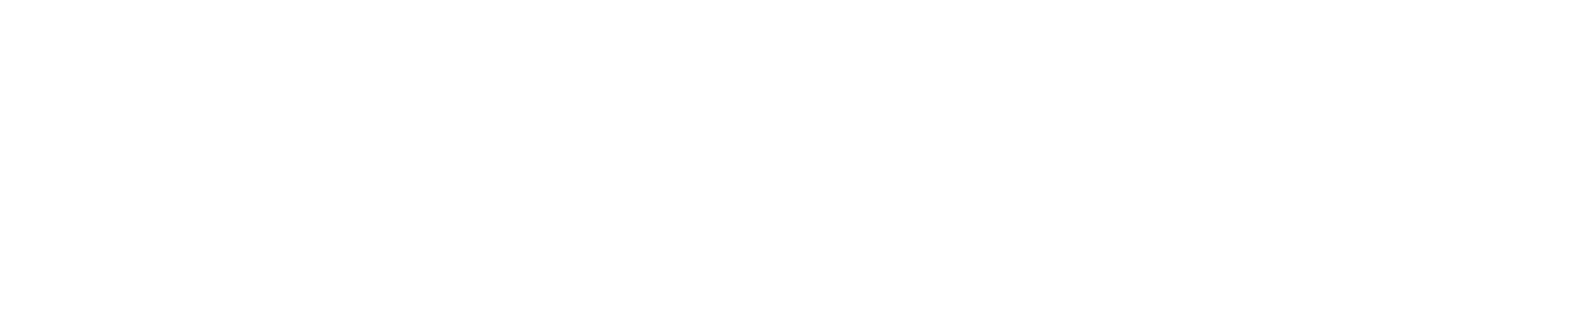 MeiraGTx Logo groß für dunkle Hintergründe (transparentes PNG)